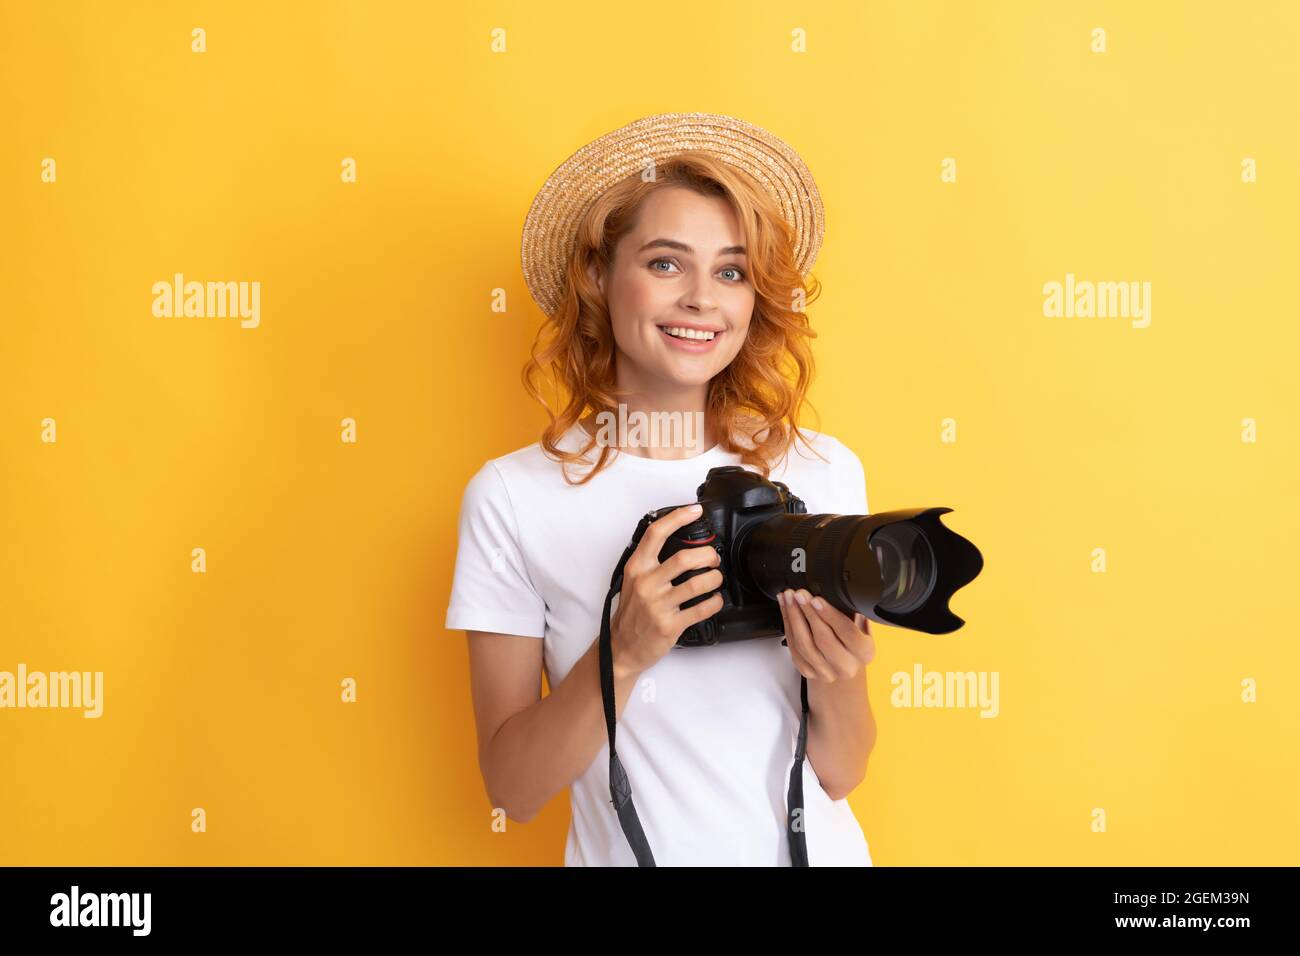 donna felice in paglia cappello fotografando. ragazza tenere fotocamera. Foto Stock